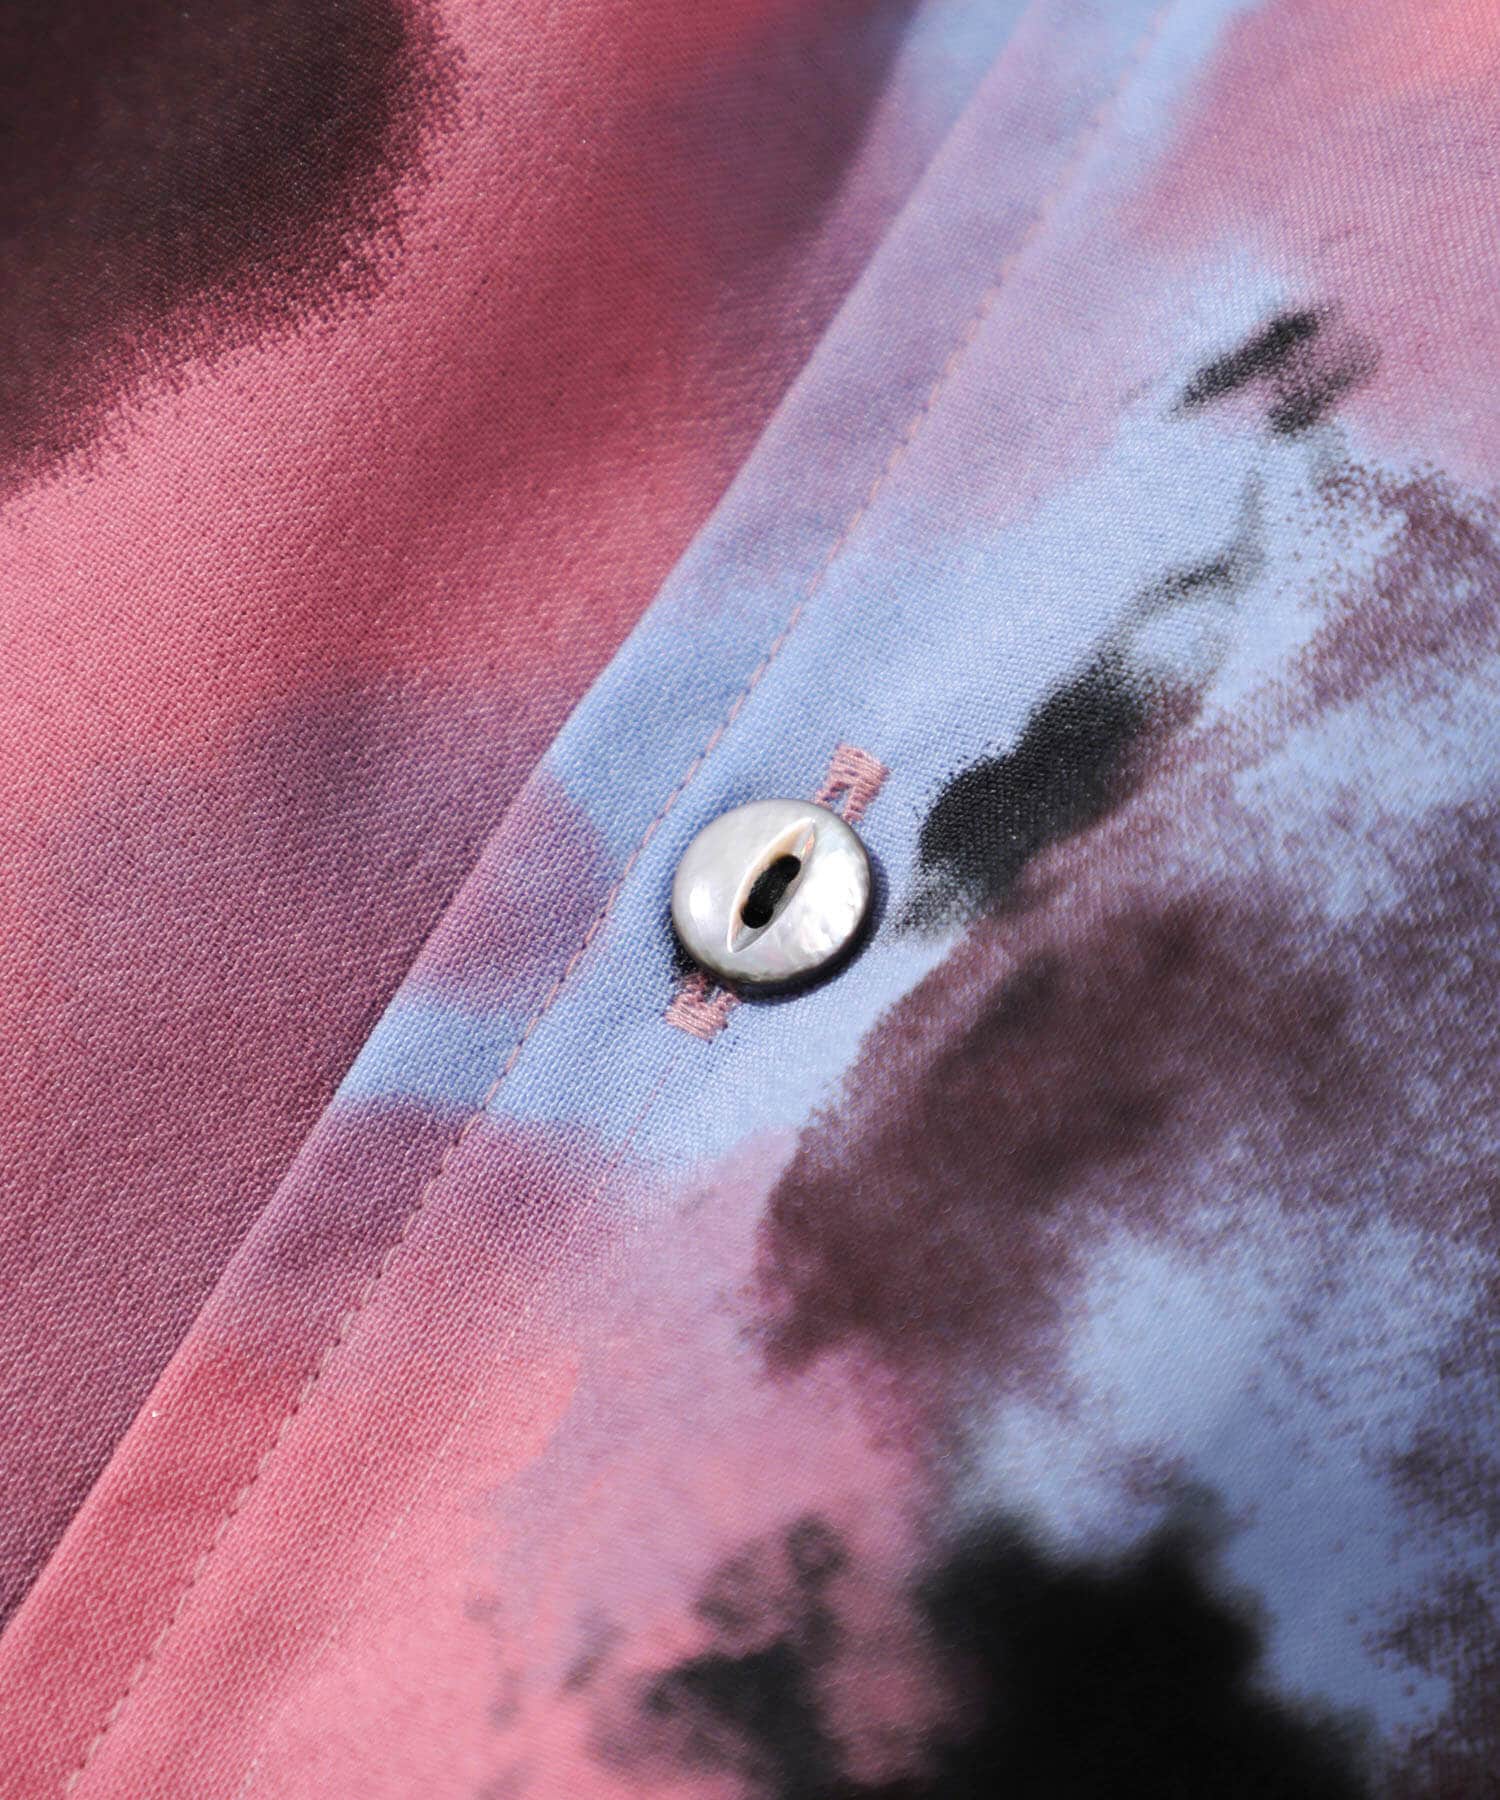 【レア】SHAREEF 刺繍デザイン レーヨンシャツジャケット 1 パープル